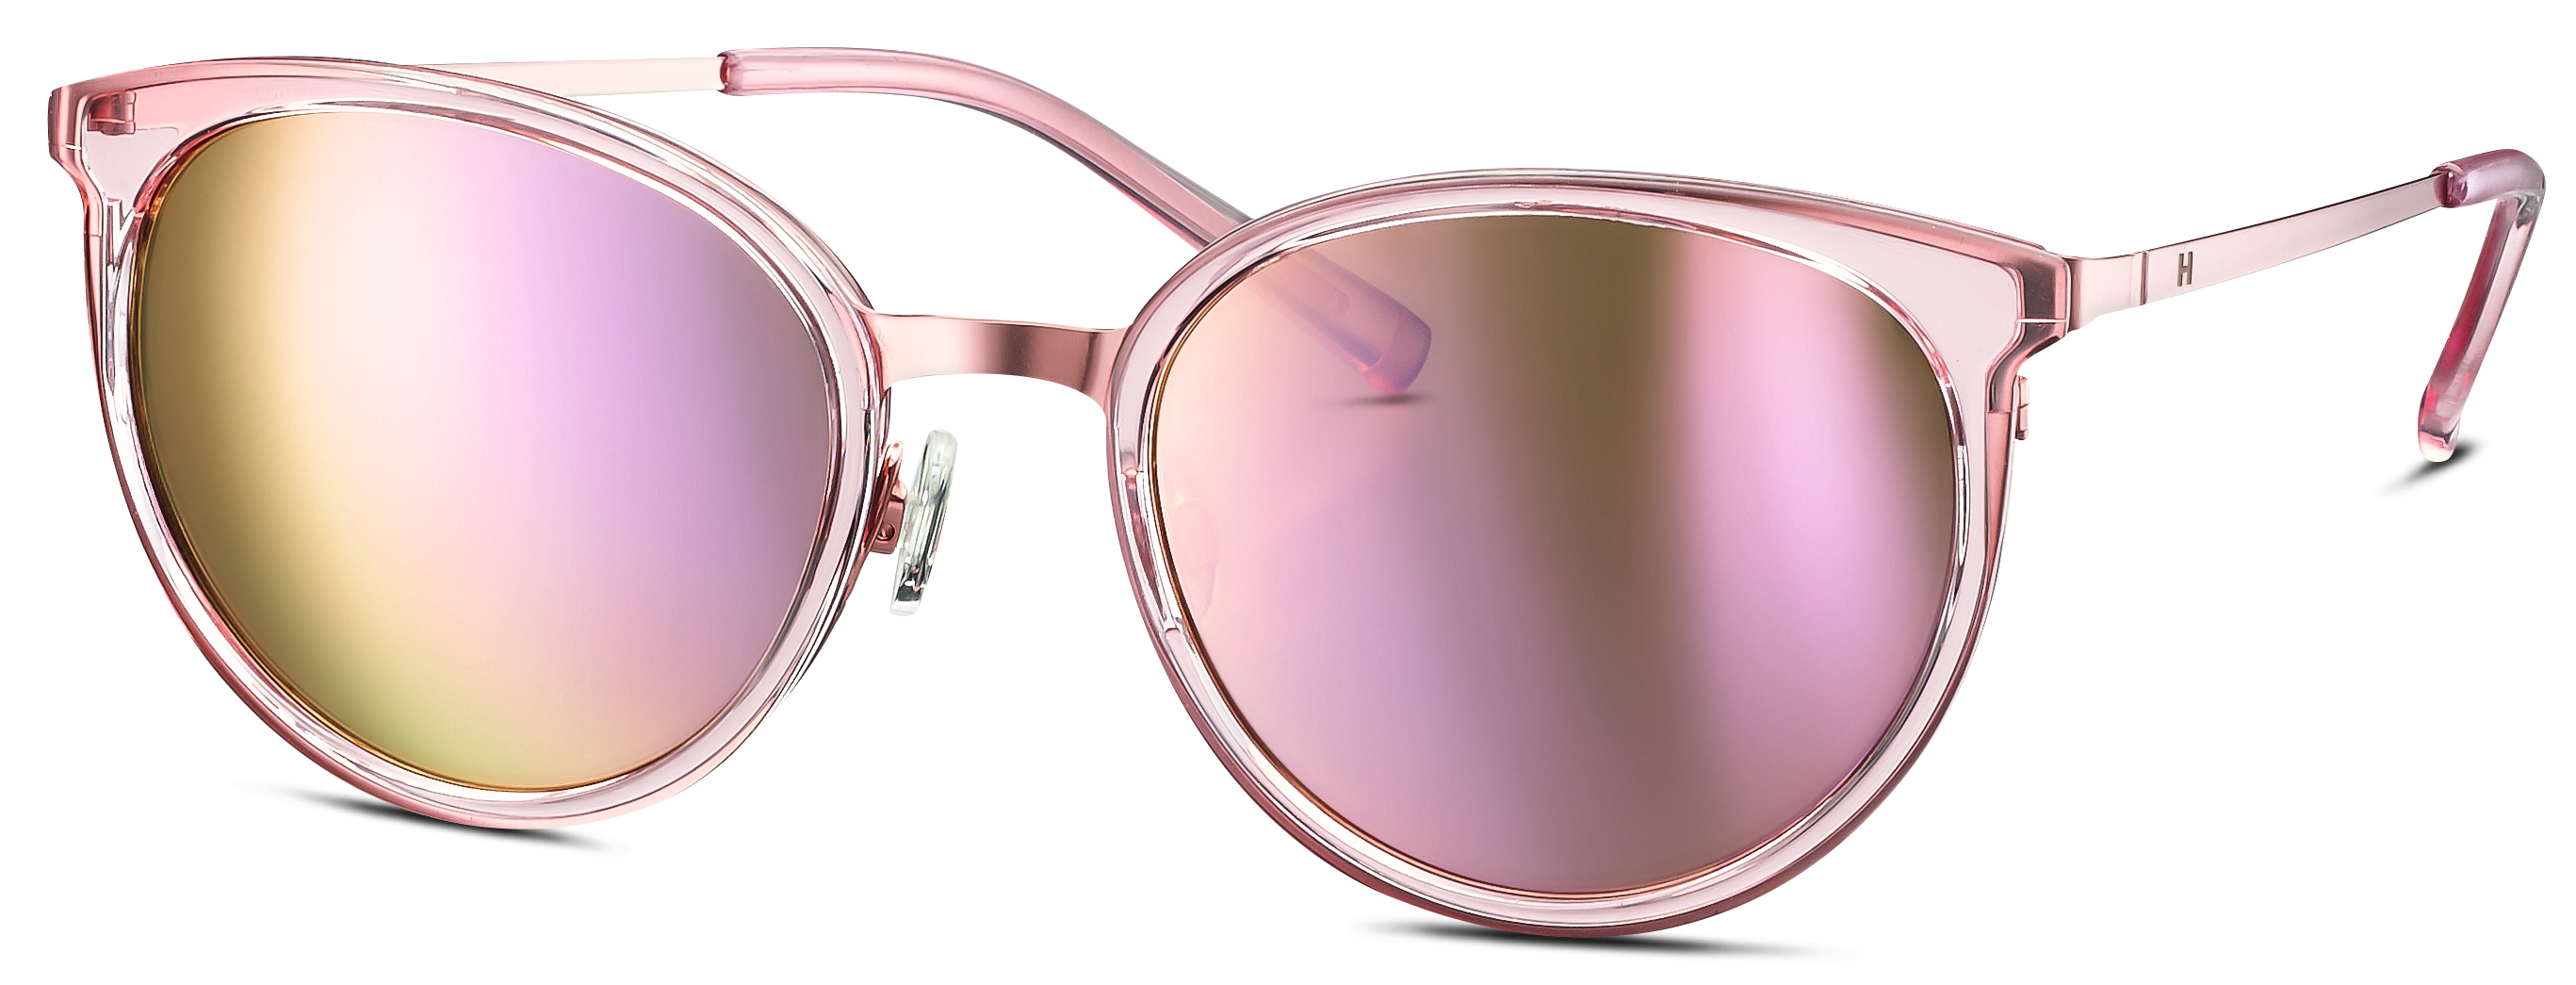 Das Bild zeigt die Sonnenbrille 585253 52 von der Marke Humphreys in rosa.